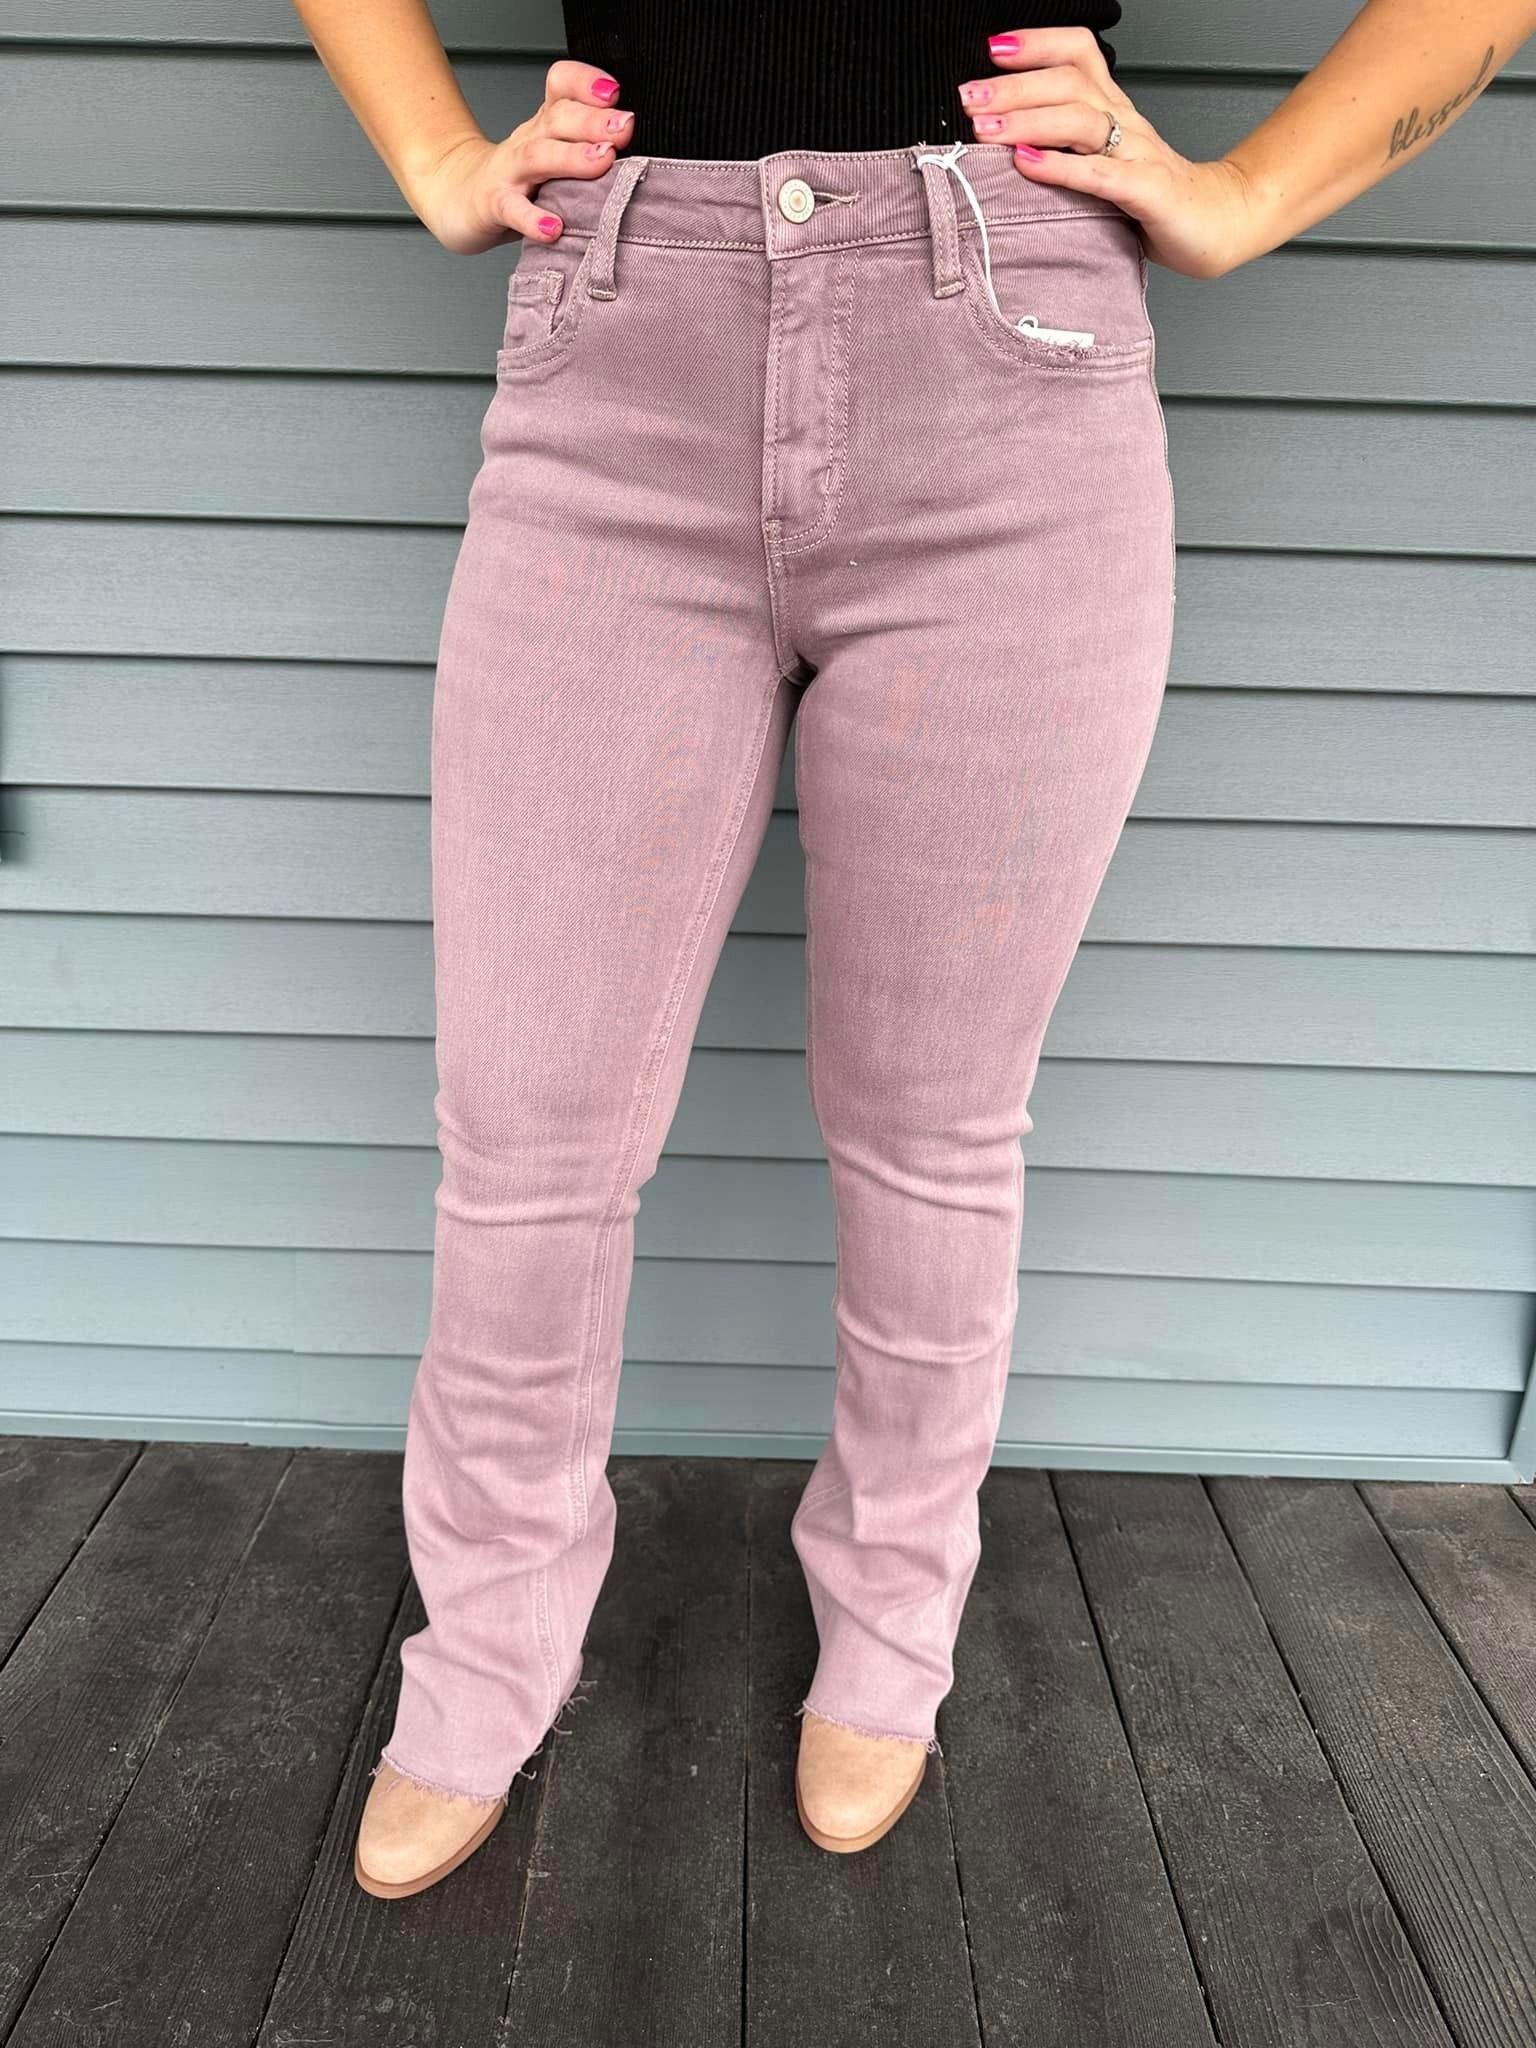 Lovervet Bootcut Jeans in Burnt Rose